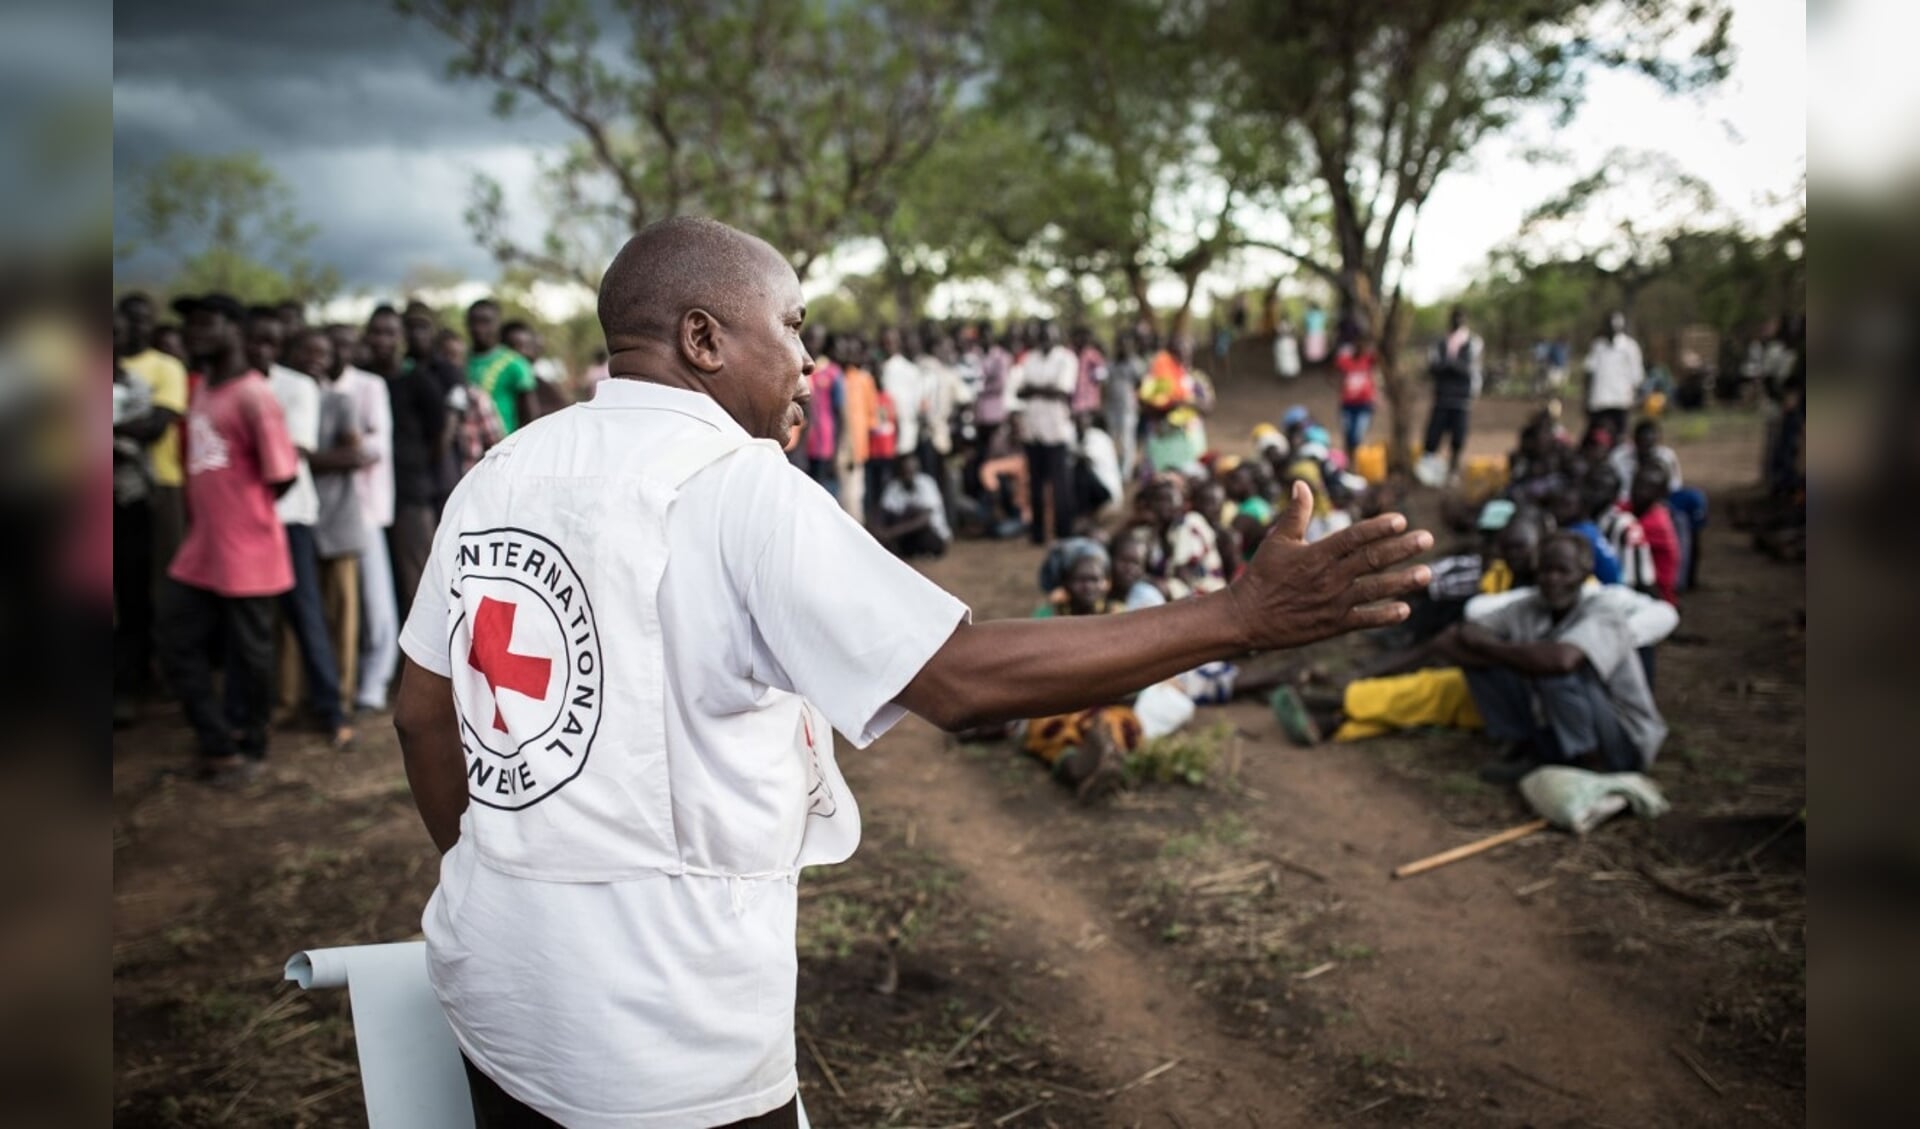 Het Rode Kruis gaat het geld gebruiken voor voedselsteun in het Afrikaanse. 